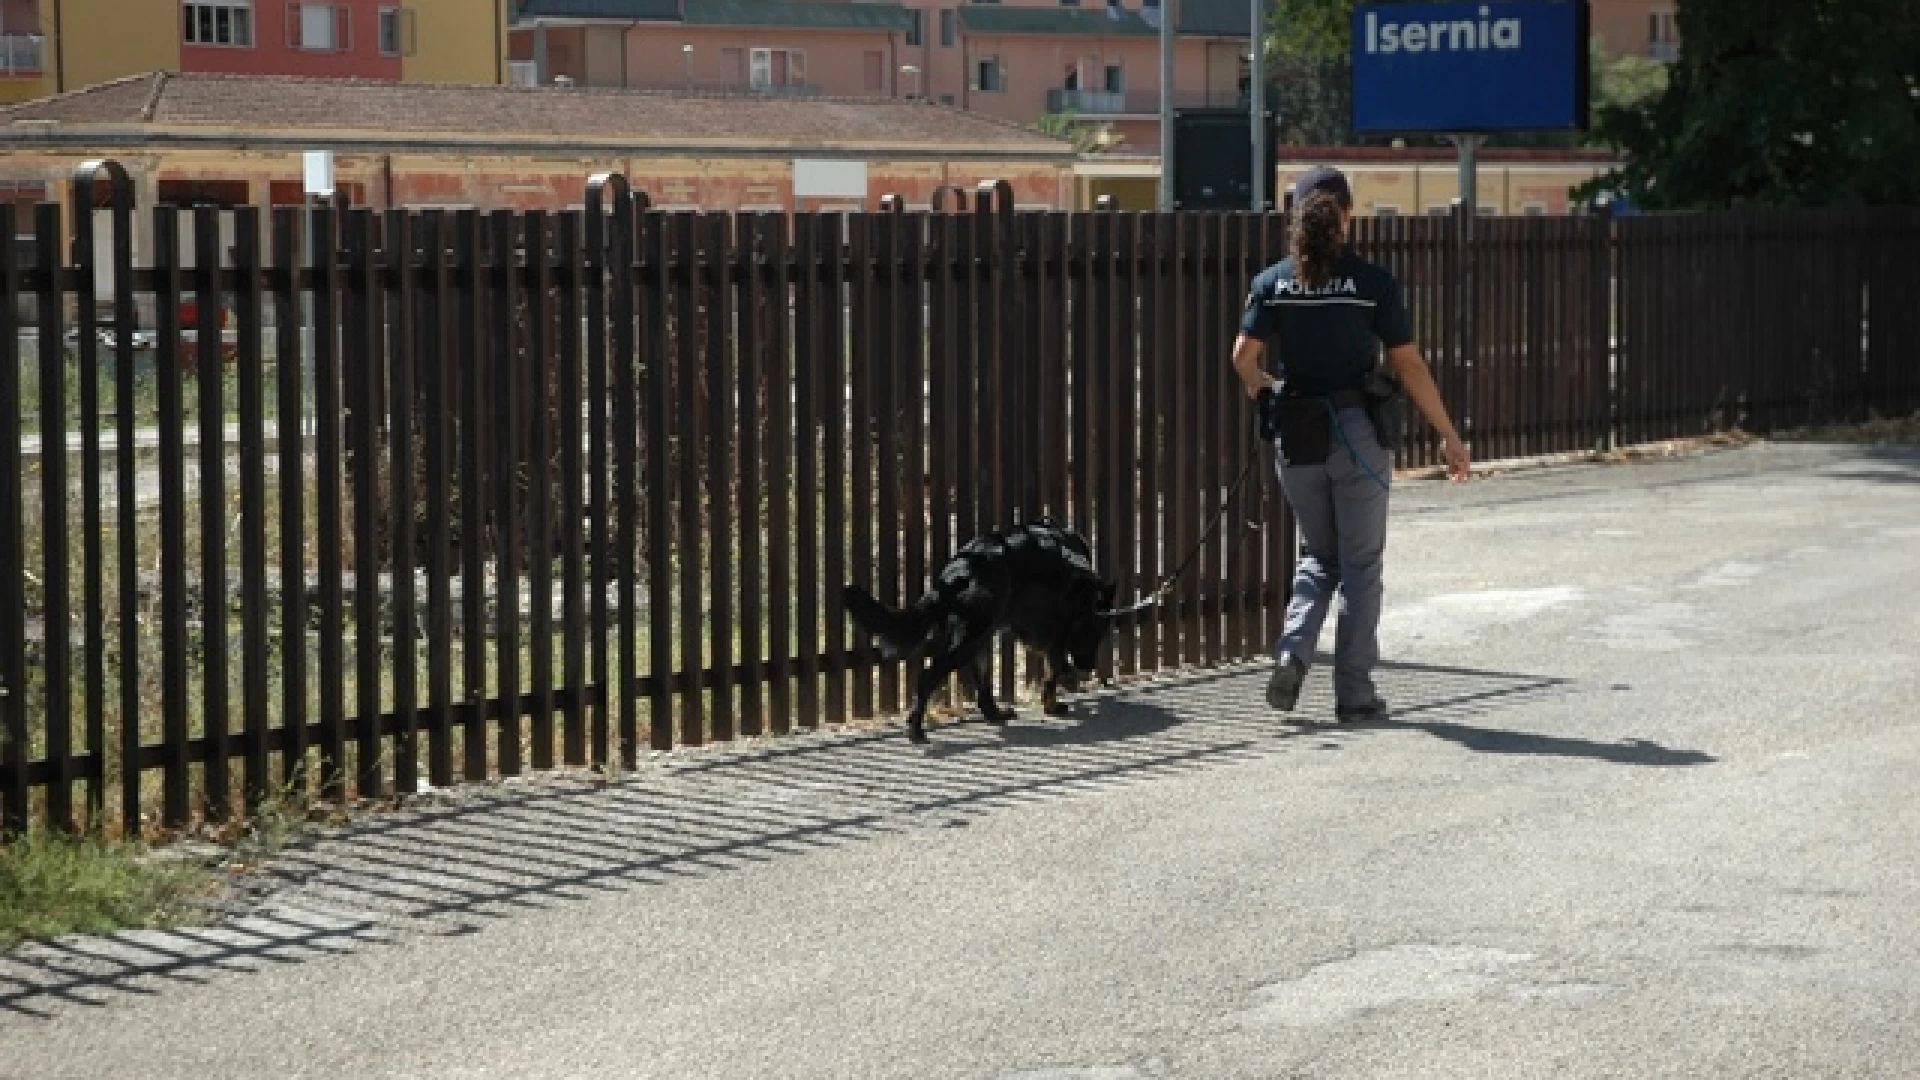 Isernia: il video in esclusiva dell'operazione antidroga della Polizia presso lo scalo Ferroviario di Isernia.